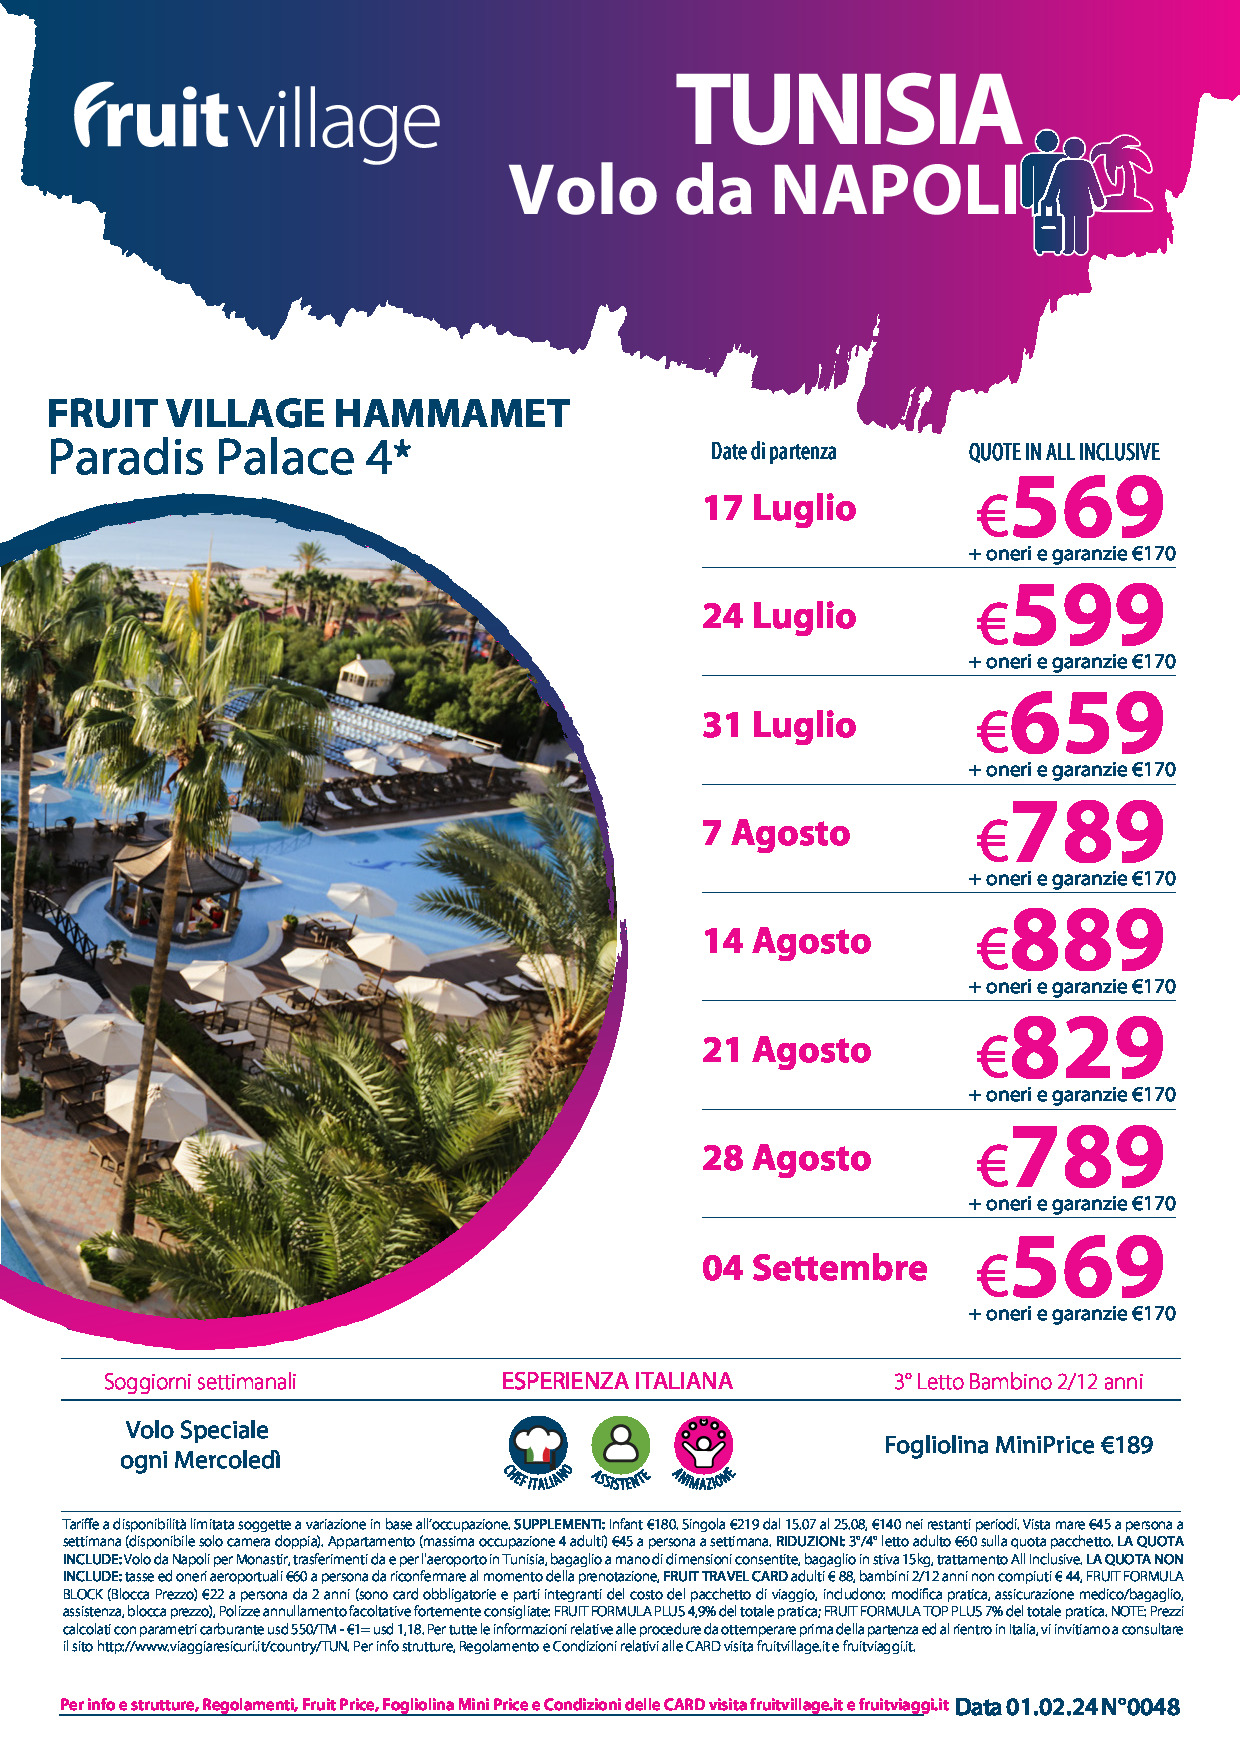 FRUIT VILLAGE Hammamet Paradis Palace 4* con volo speciale da Napoli